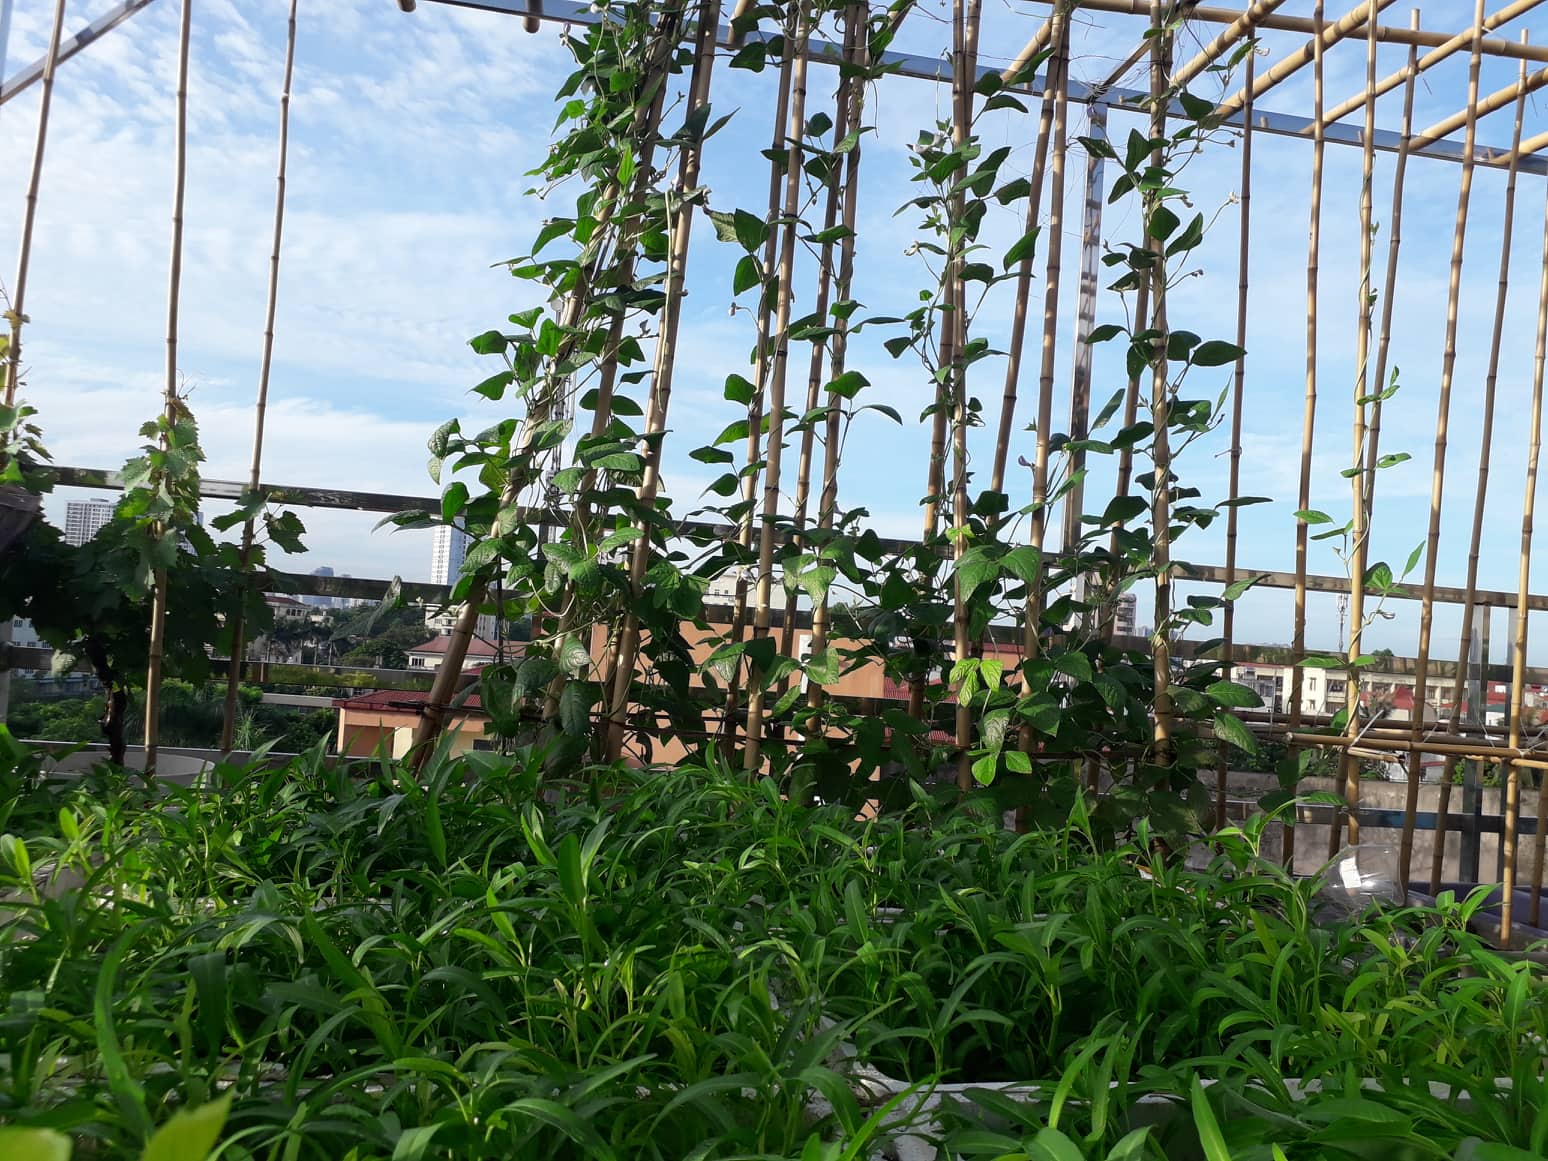 Sân thượng 50m² quanh năm xanh tốt với đủ loại rau quả sạch theo mùa của mẹ đảm ở Hà Nội - Ảnh 5.